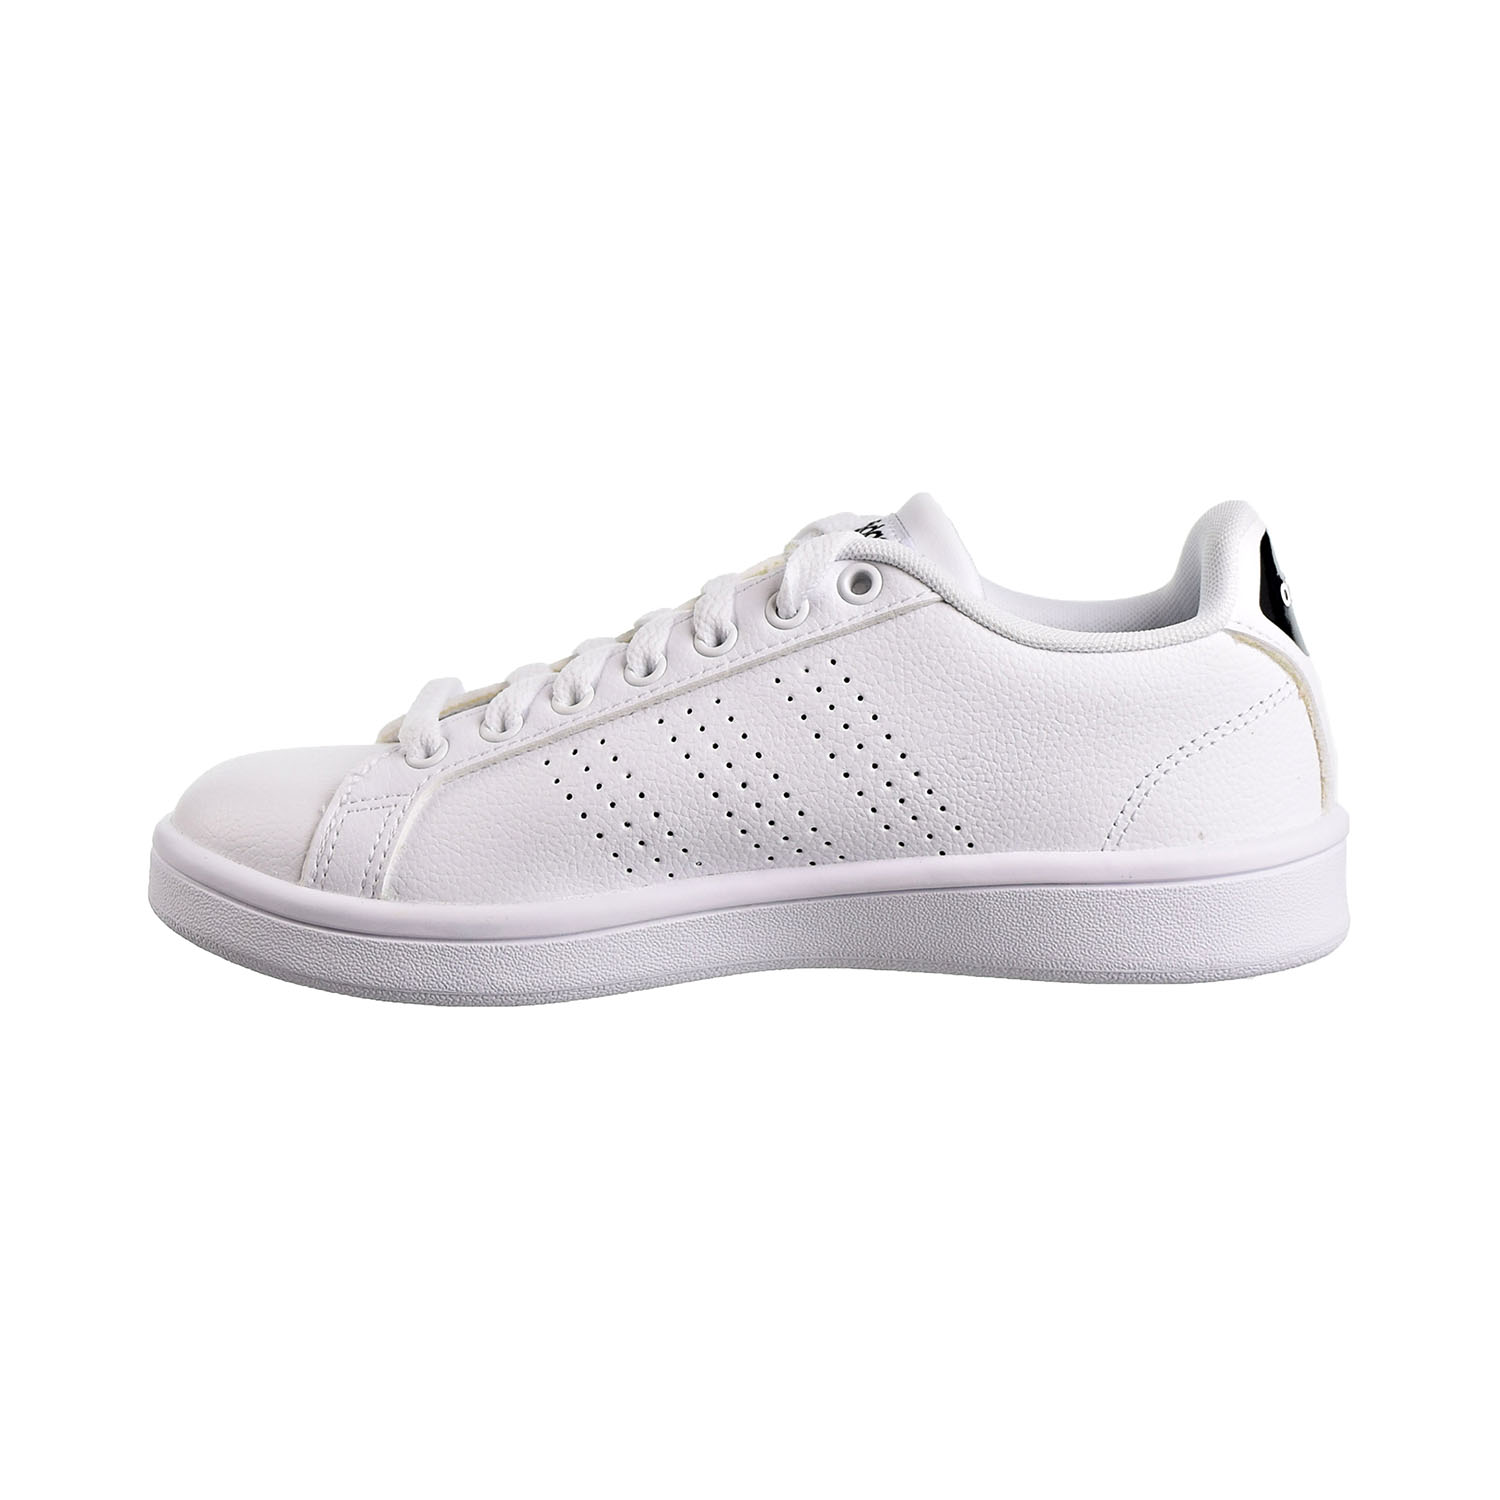 Adidas Cloudfoam Advantage Women's Shoes Cloud White AW4323 | eBay